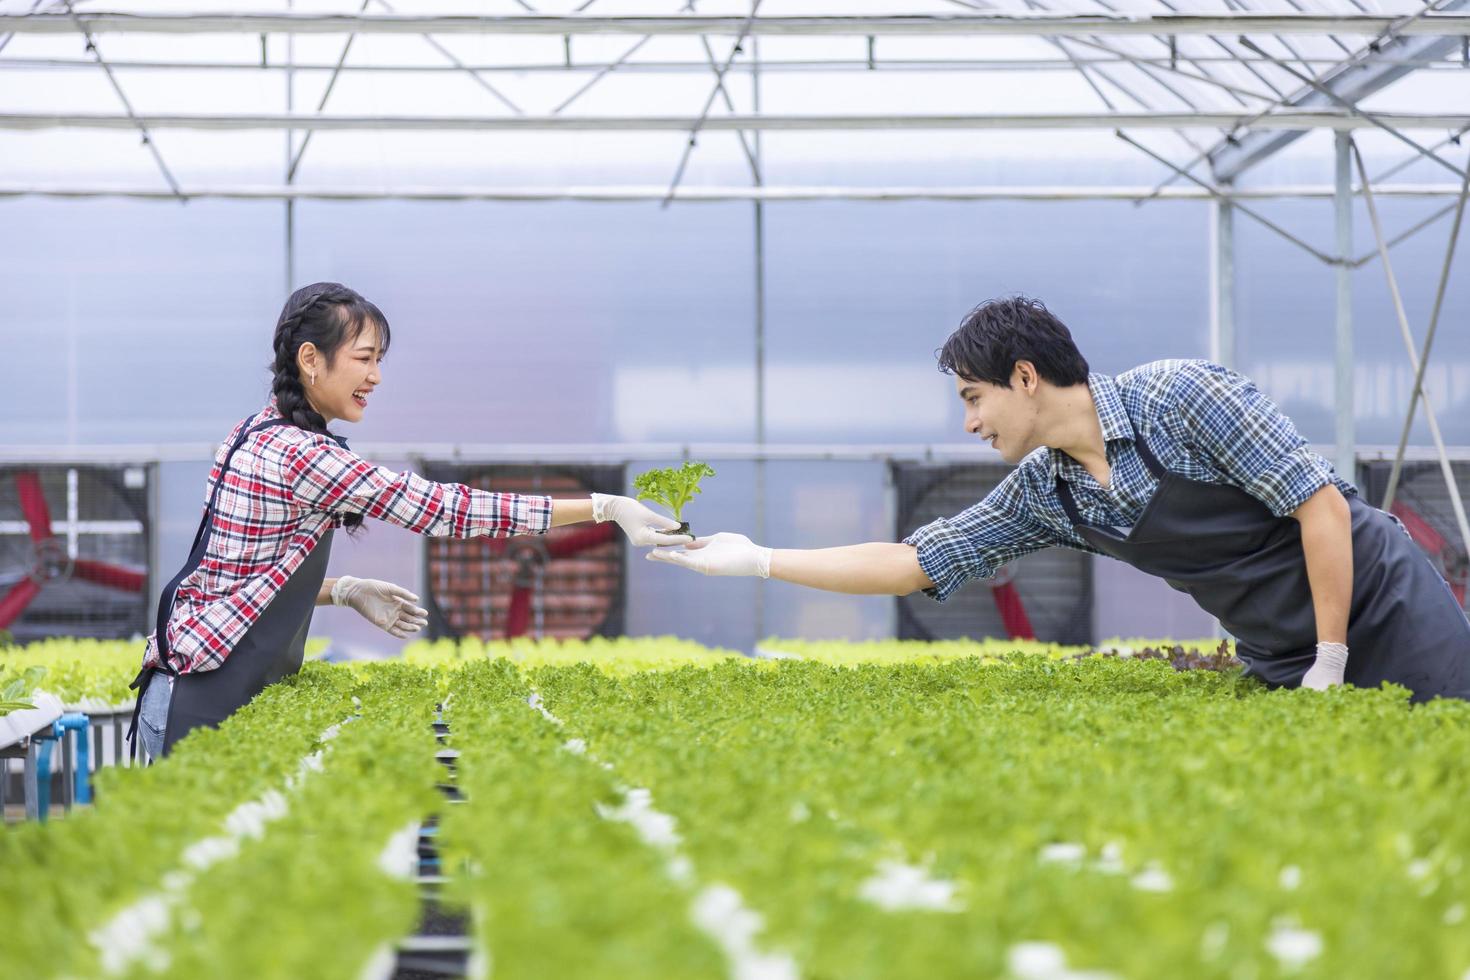 agricultores locales asiáticos que cultivan su propia ensalada de lechuga de roble verde en el invernadero utilizando un enfoque orgánico del sistema de agua hidropónico para el negocio familiar y eligiendo algunos para la venta foto